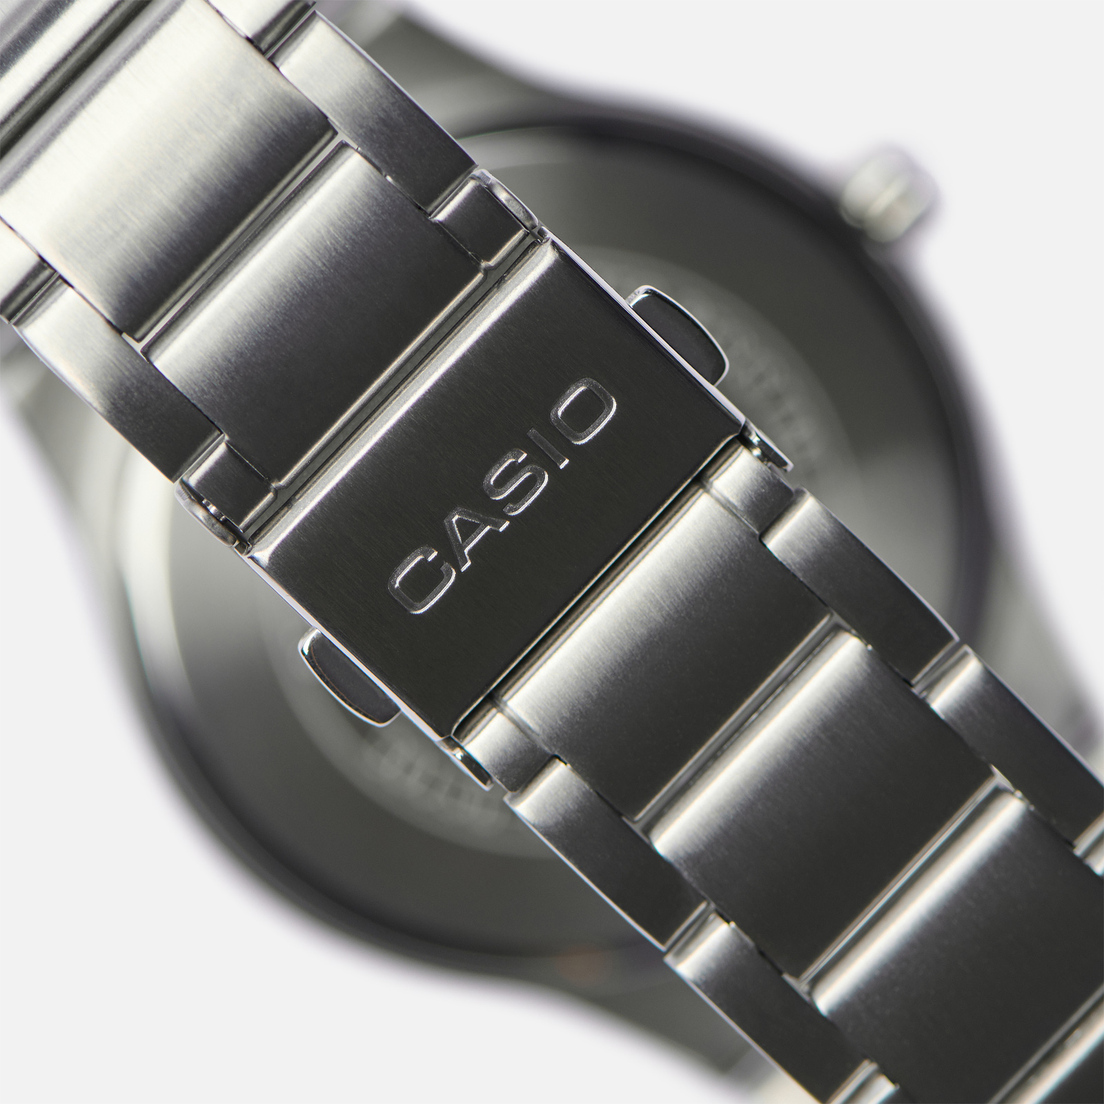 CASIO Наручные часы Collection MTP-RS105D-1B